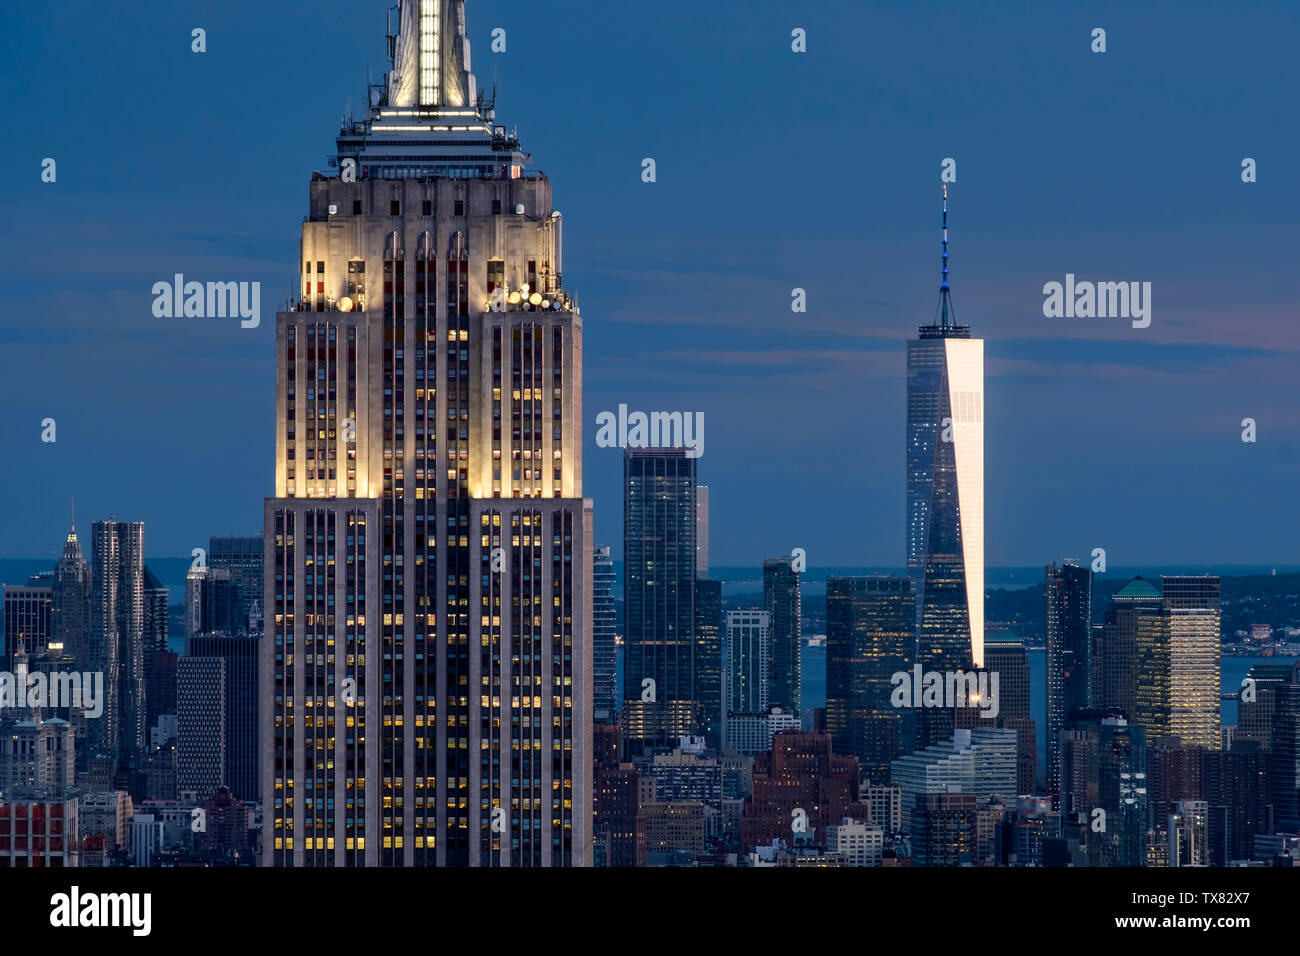 L'Empire State Building e One World Trade Center di notte, New York, Stati Uniti d'America Foto Stock